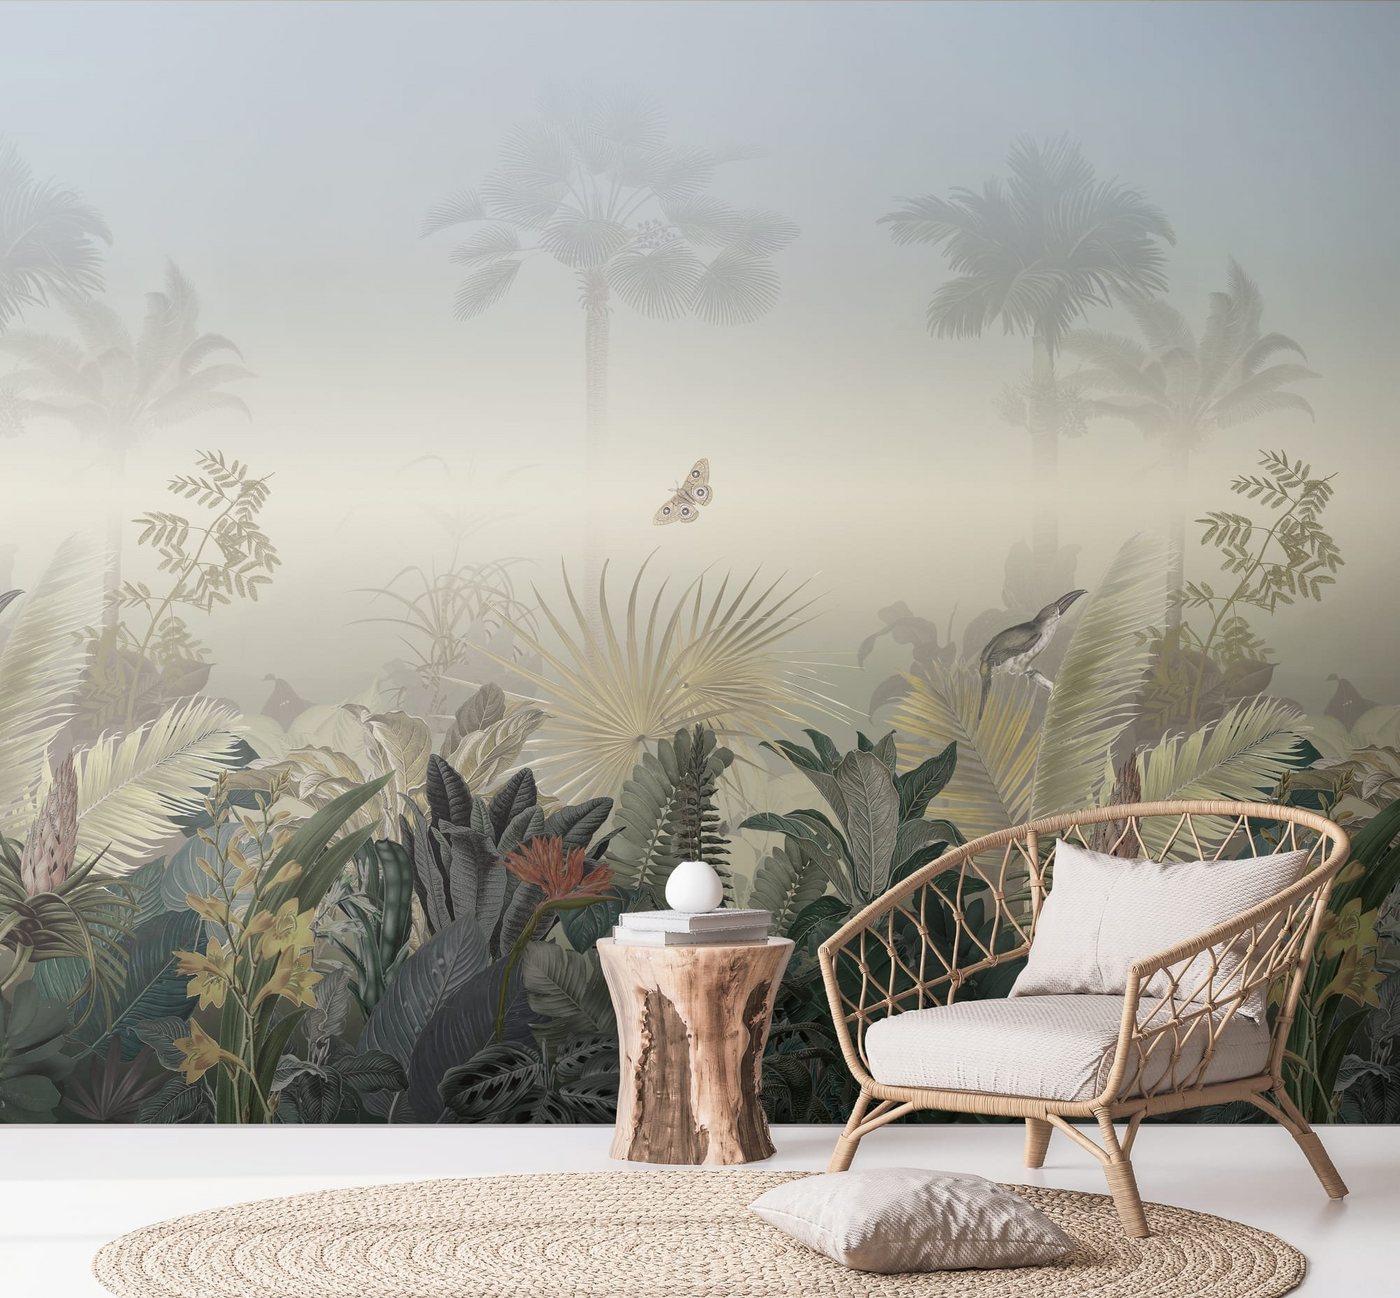 Newroom Vliestapete, [ 2,8 x 2,65 m ] großzügiges Motiv - kein wiederkehrendes Muster - nahtlos große Flächen möglich - Fototapete Wandbild Dschungel Palmen Palmenblätter Made in Germany von Newroom